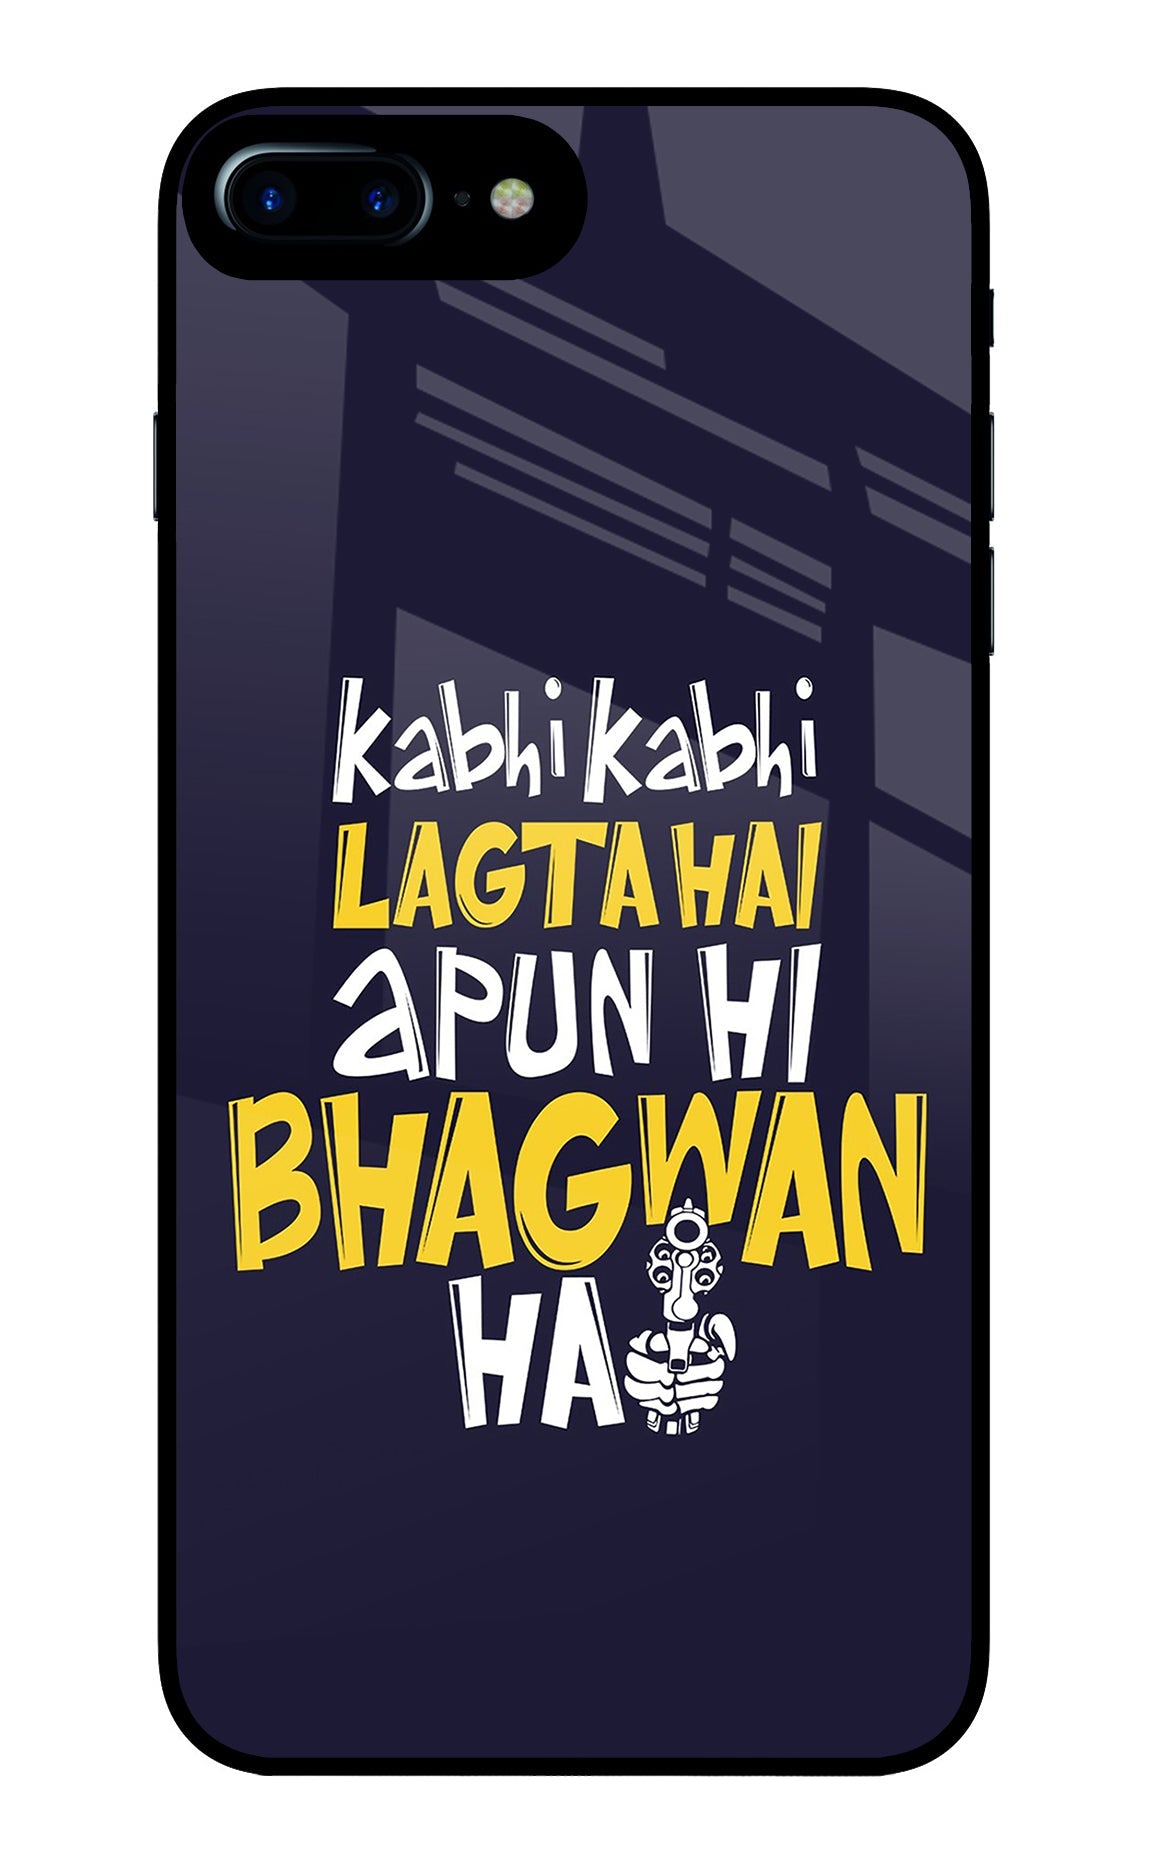 Kabhi Kabhi Lagta Hai Apun Hi Bhagwan Hai iPhone 8 Plus Glass Case